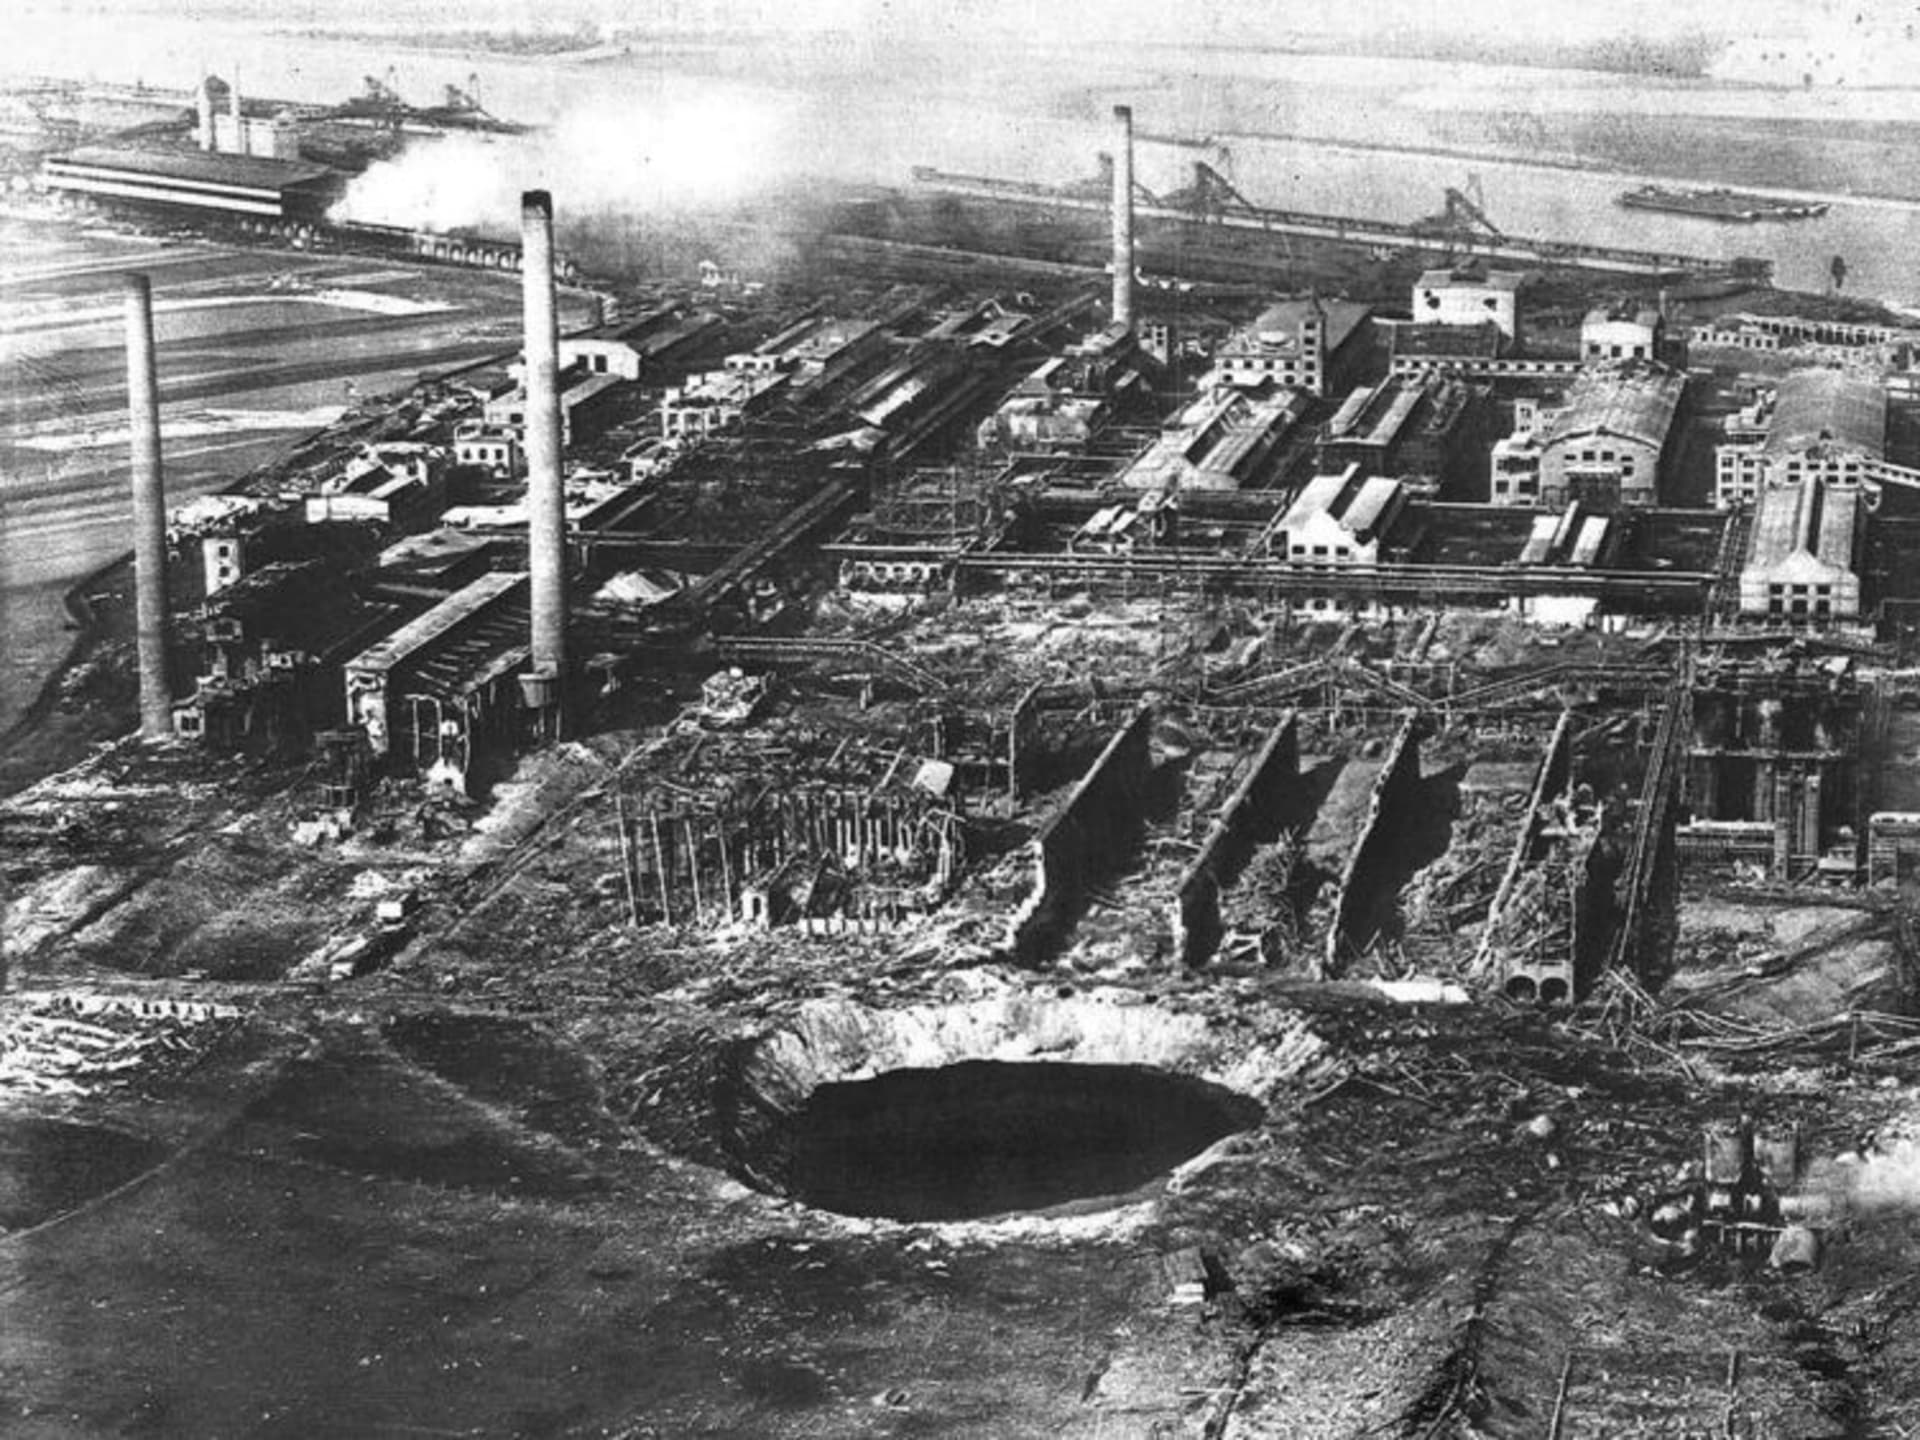 Takto vypadaly zbytky továrny BASF v německém Oppau nedaleko Mannheimu po výbuchu dusičnanu amonného. Tehdy zahynulo 561 lidí. (Zdroj: BASF)